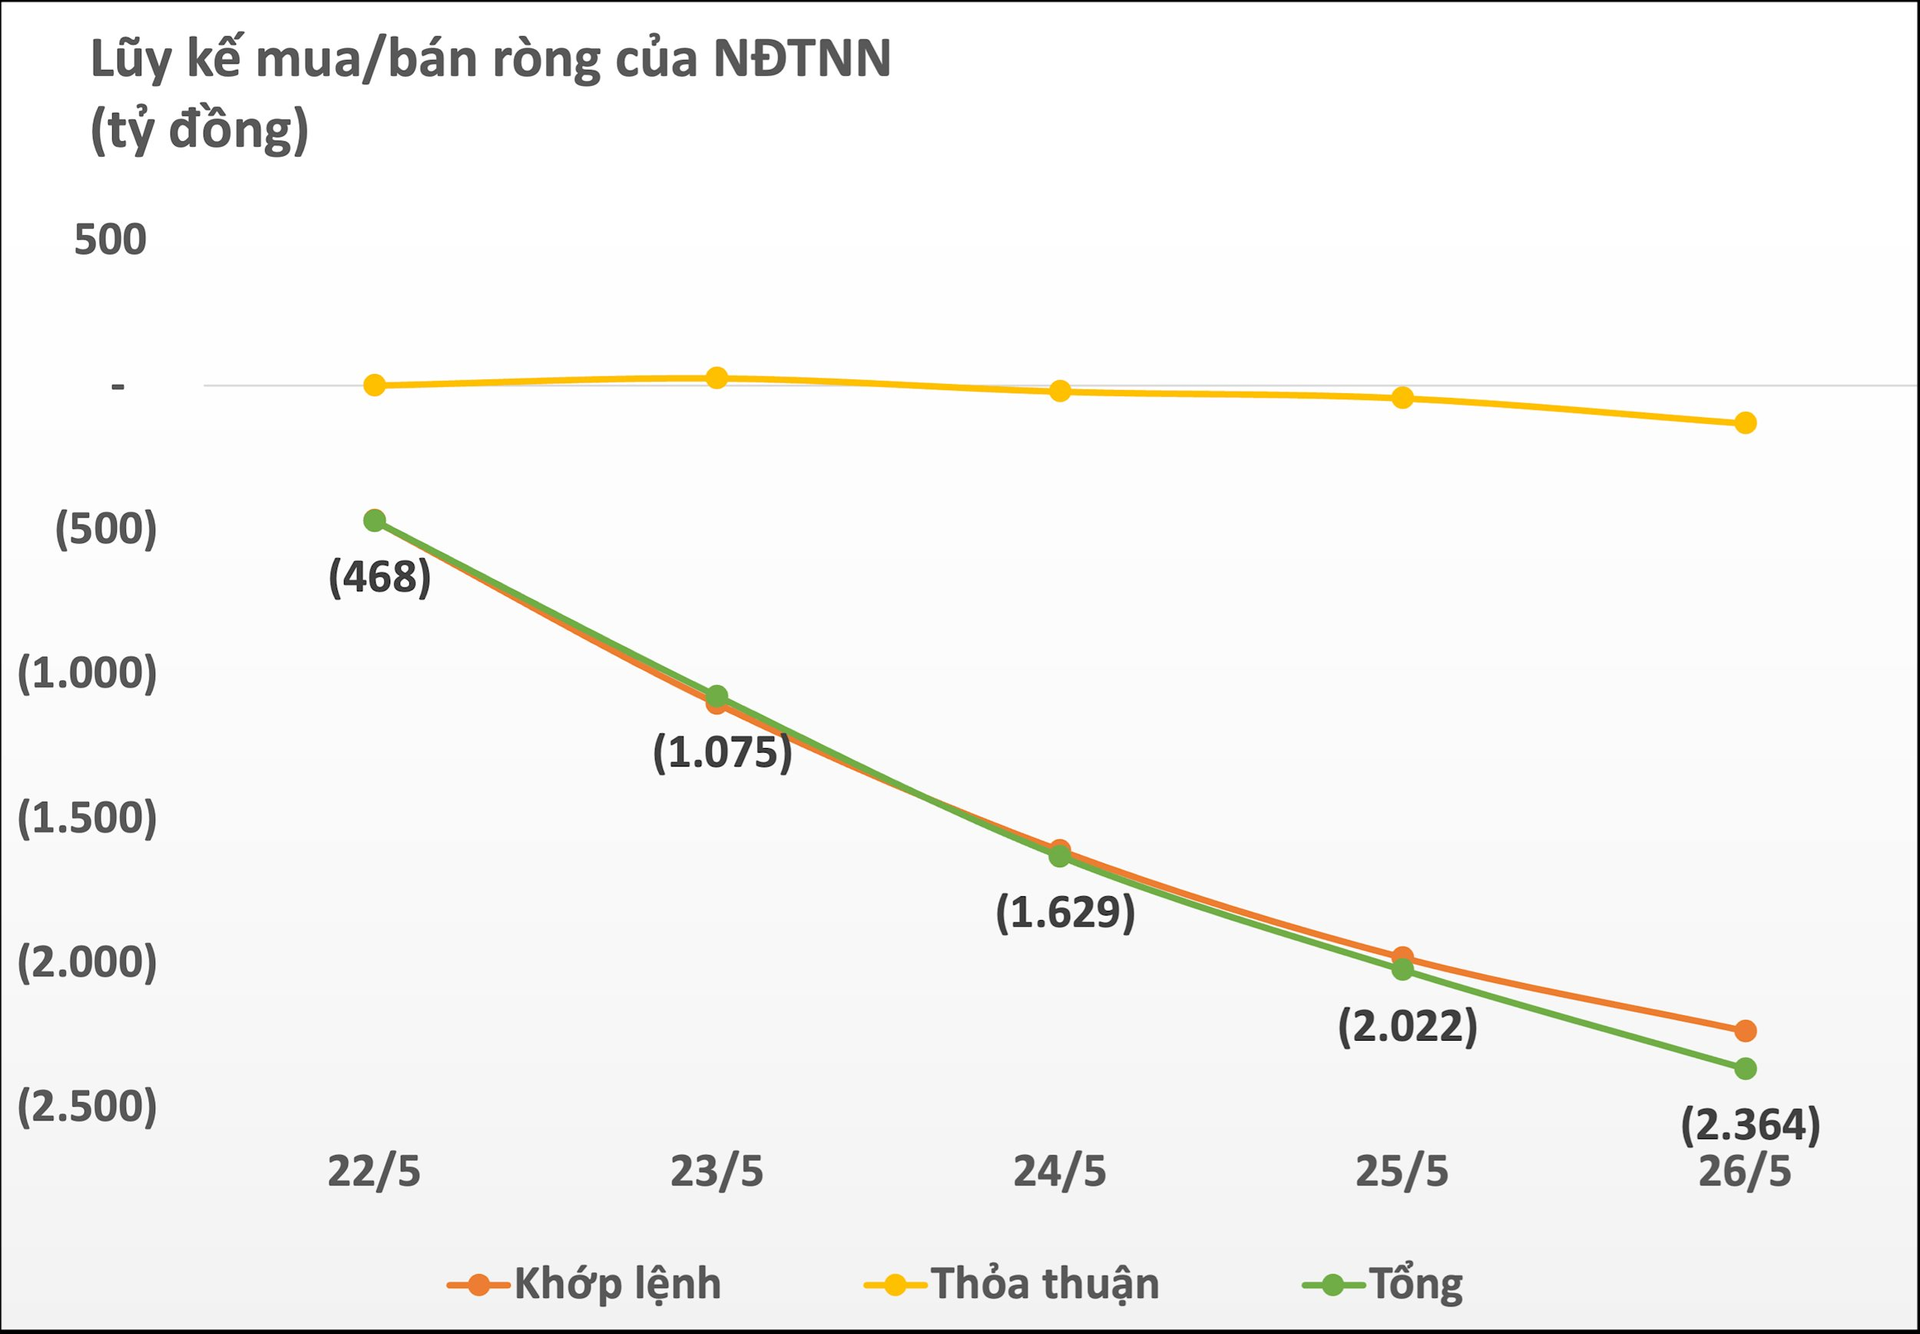 Khối ngoại mạnh tay "xả hàng", gần 2.400 tỷ đồng cổ phiếu Việt Nam bị bán ròng chỉ trong 1 tuần giao dịch - Ảnh 1.